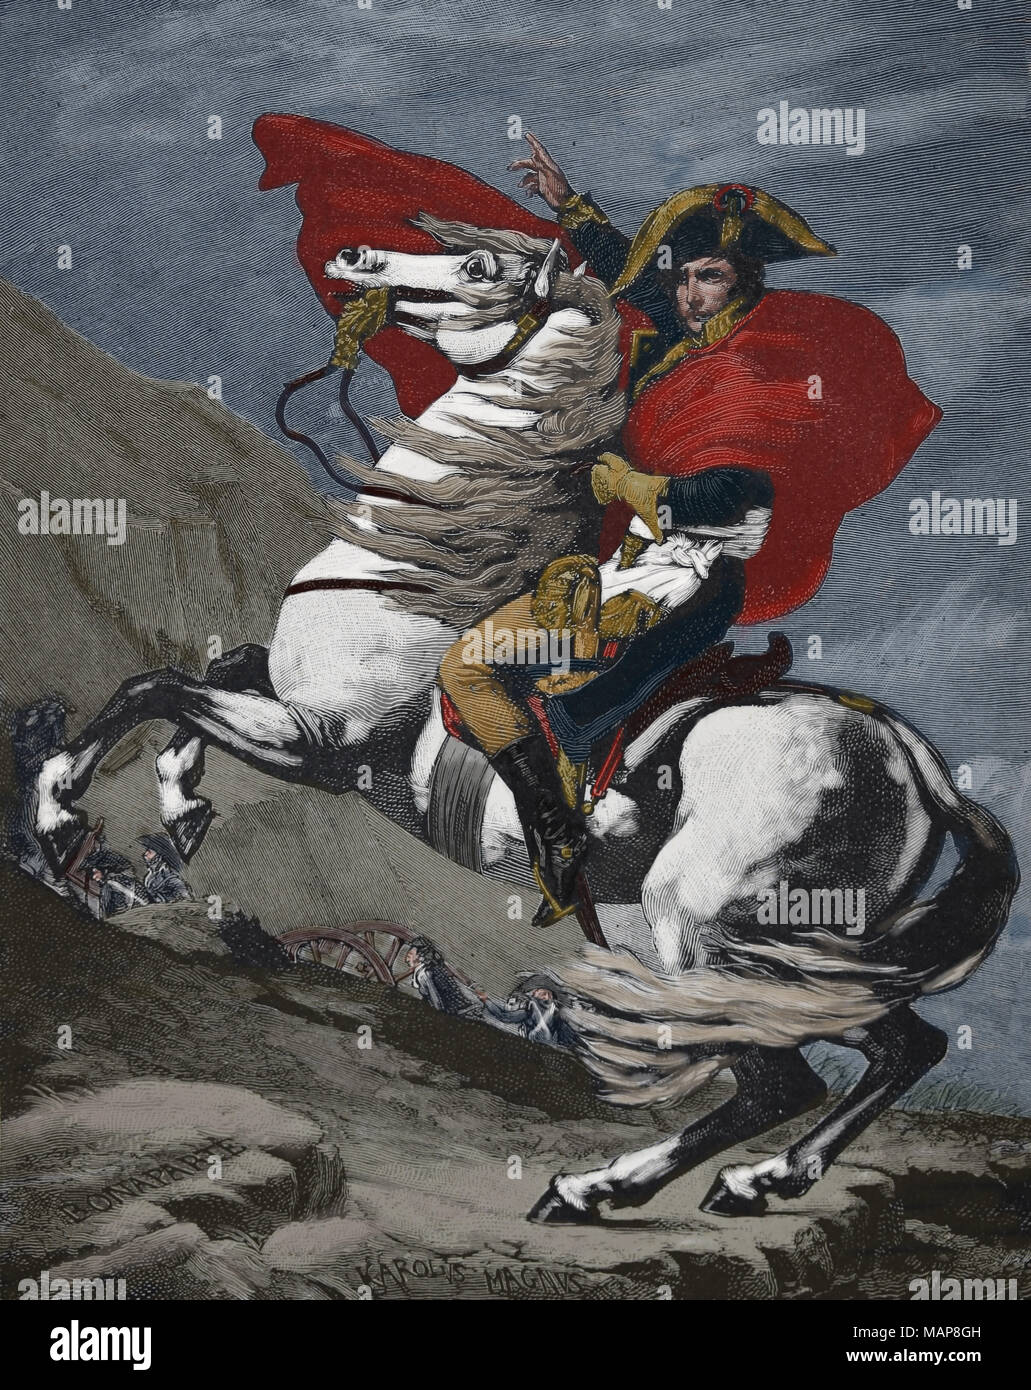 Napoléon Bonaparte (1769-1821) traversée des Alpes. 1800. La guerre de la Révolution française. Gravure extraite d'une peinture Ingres Banque D'Images